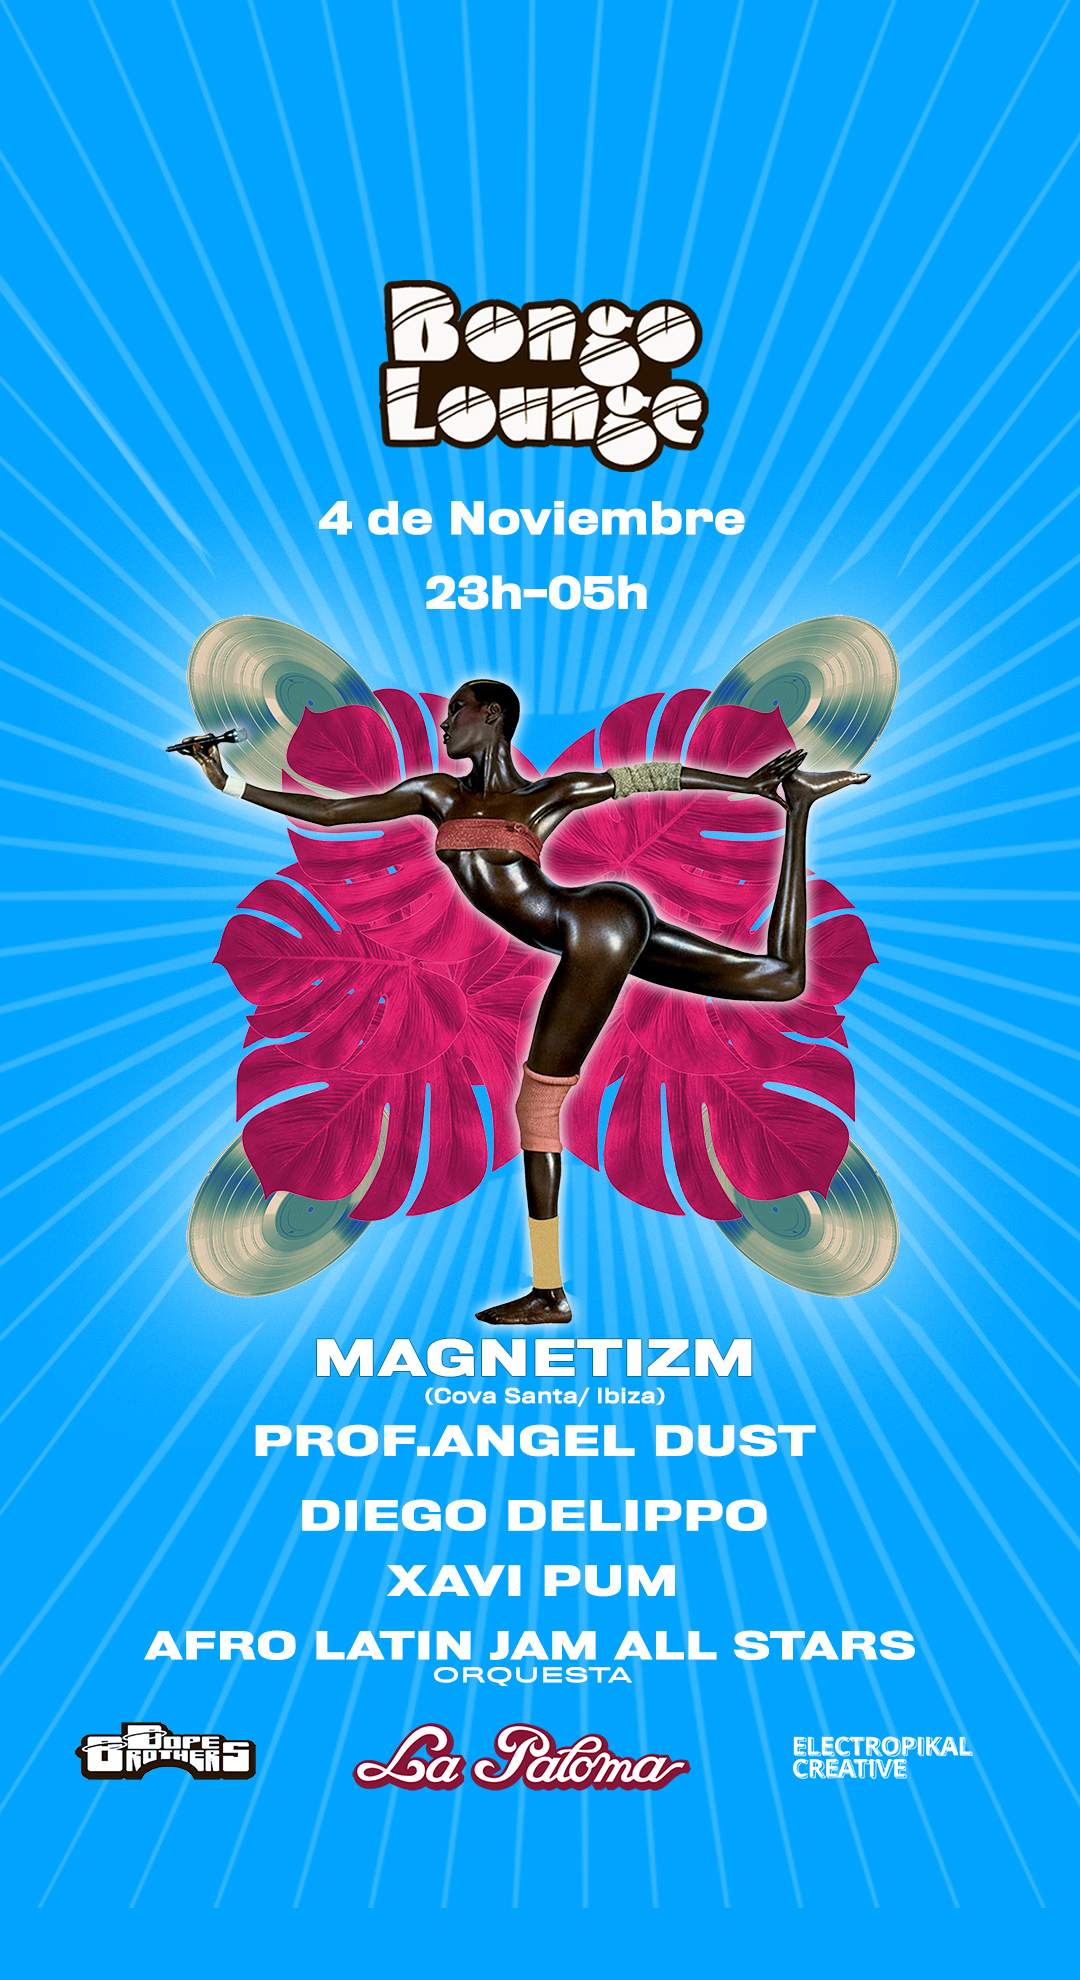 Bongo Lounge with Magnetizm, Prof. Angel Dust, Diego Delippo y mas en La Paloma - Página frontal